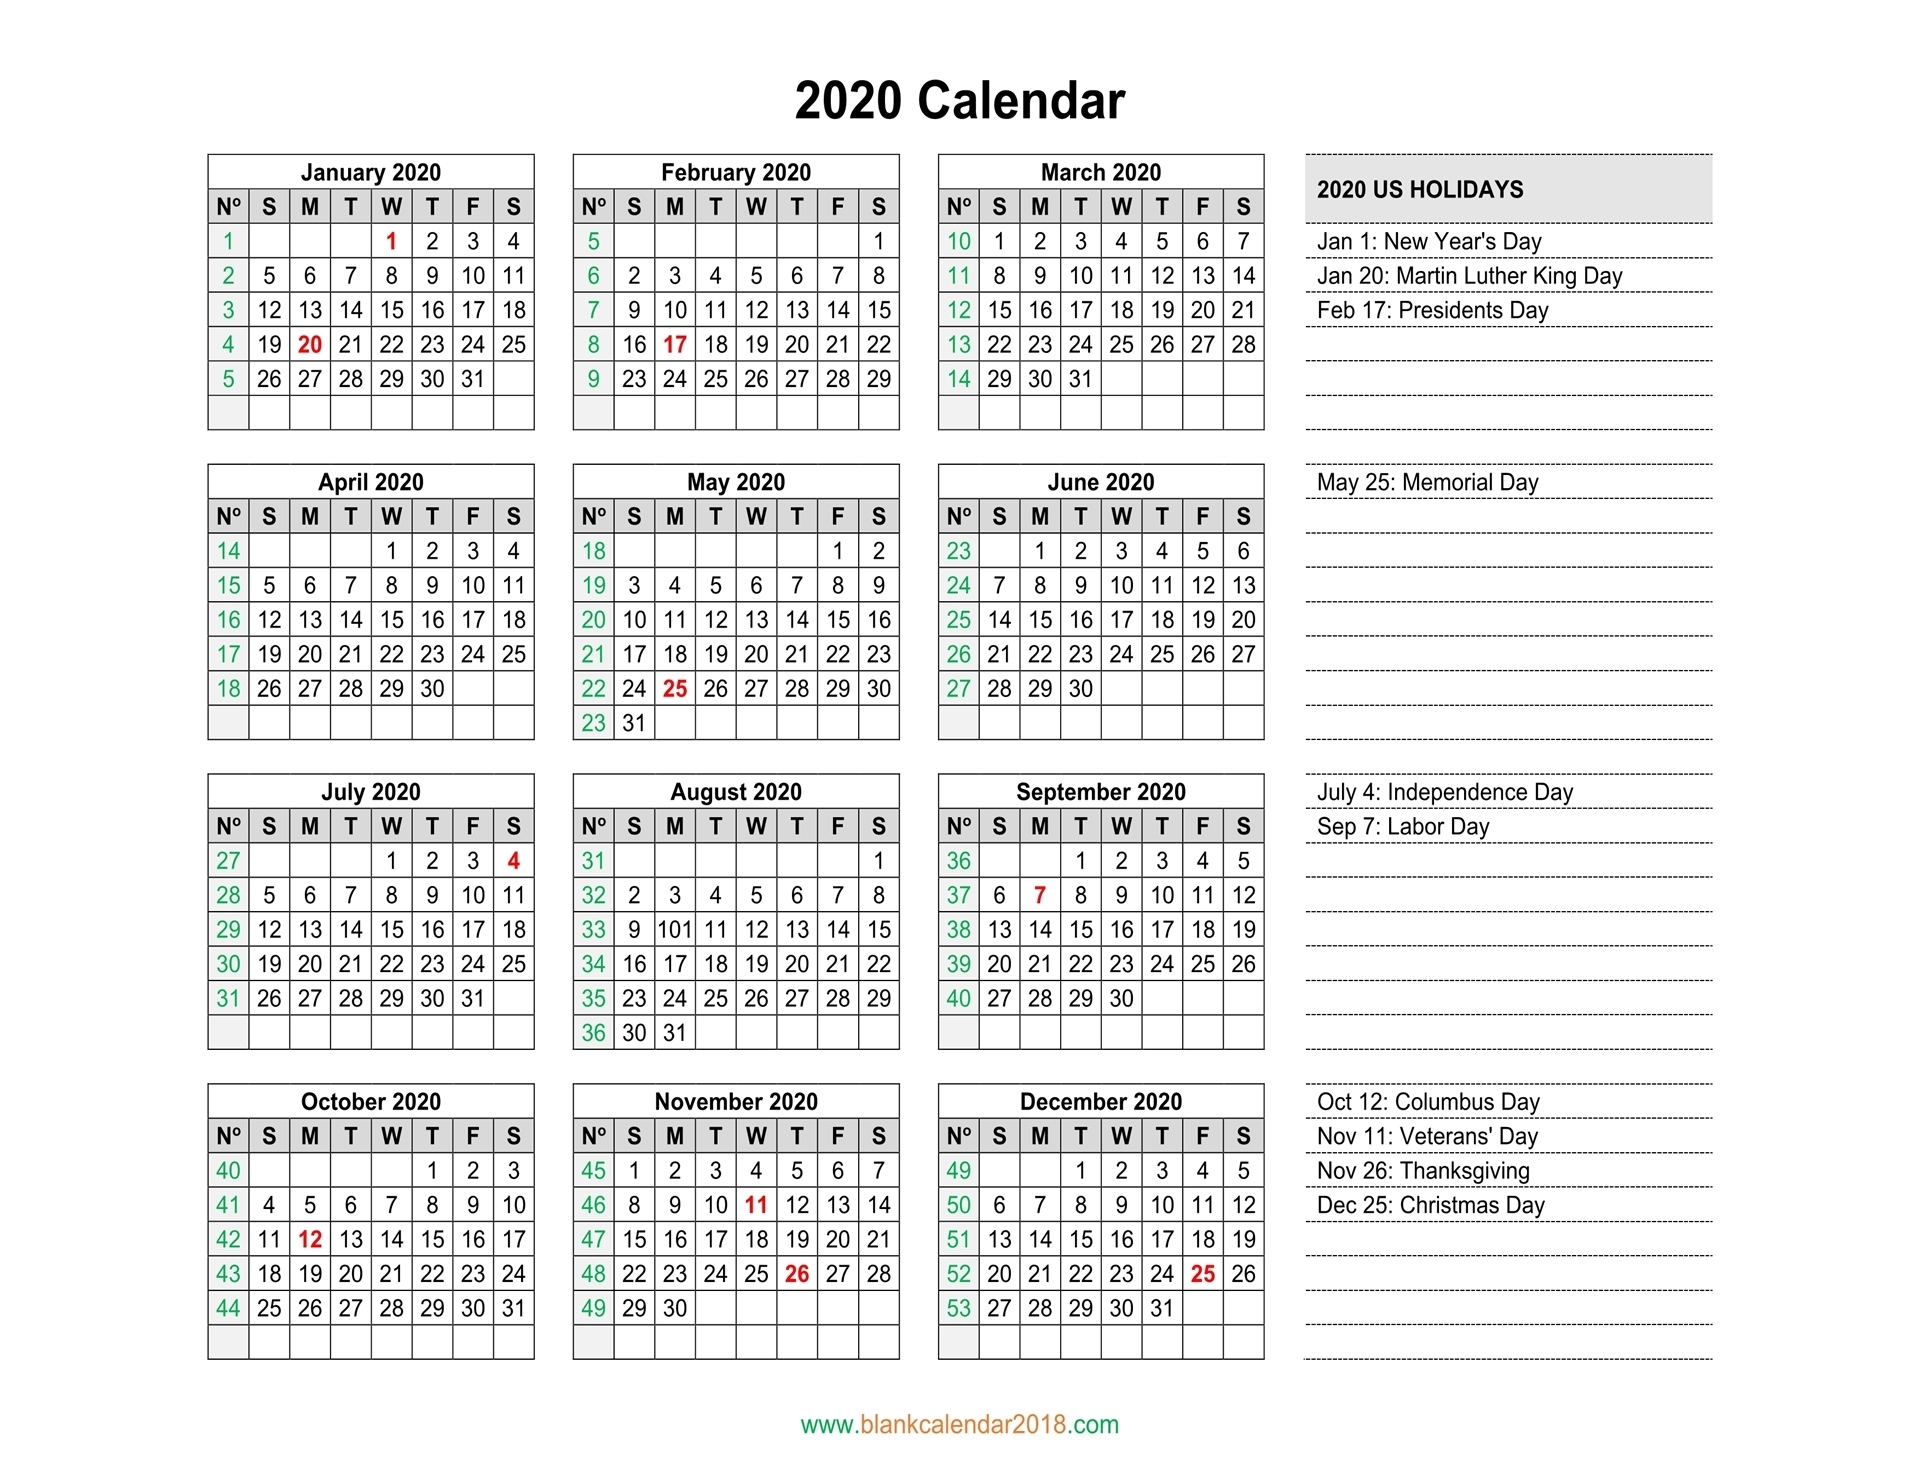 Blank Calendar 2020 Blank 2020 Calendar With Holidays Usa